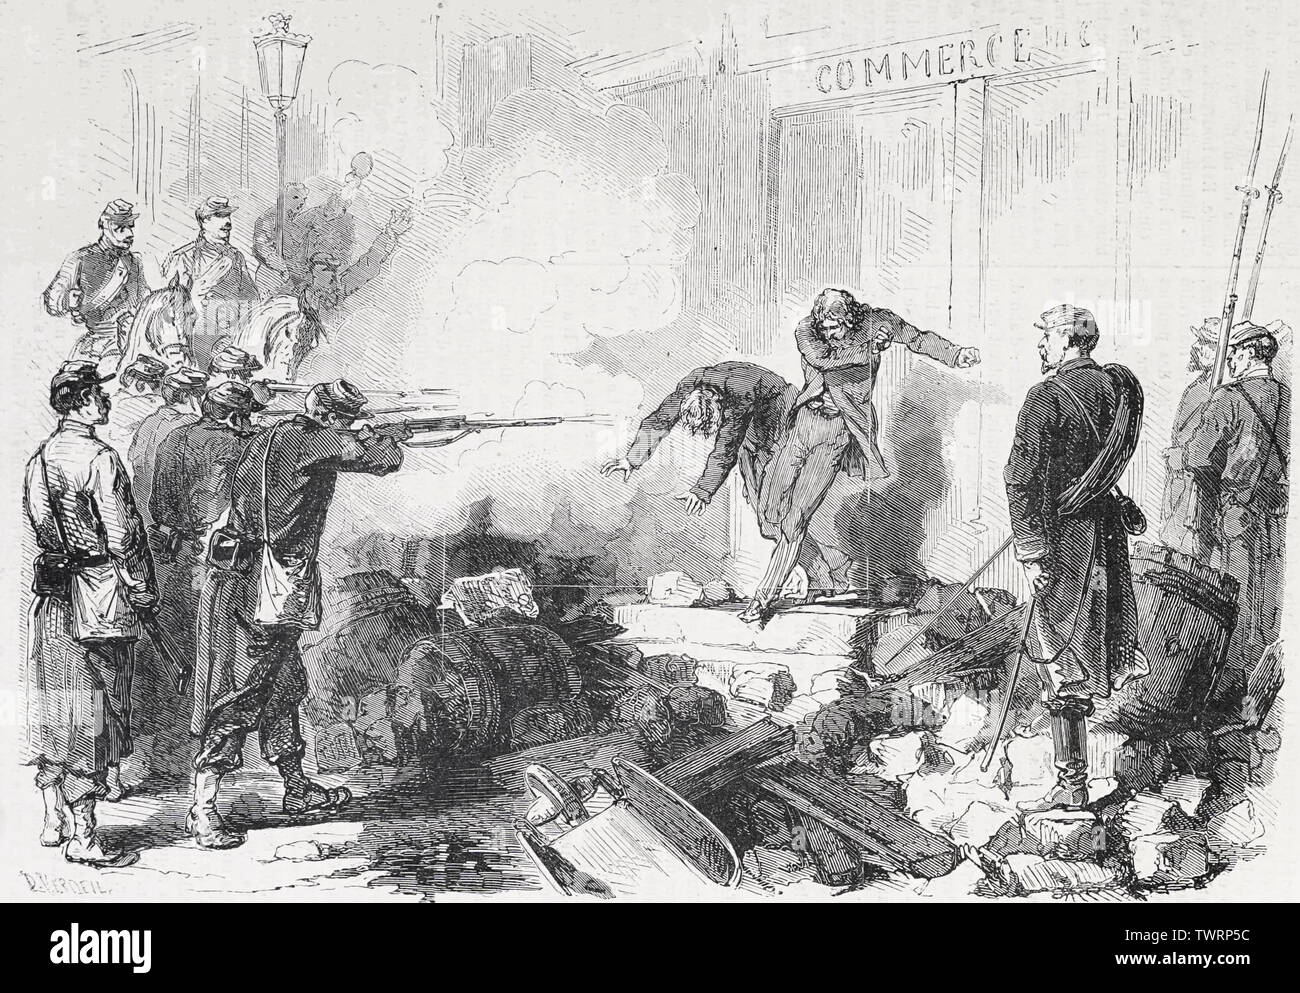 L'exécution sommaire d'agents de la municipalité pris les armes à la main, rue Saint-Germain lors de l'attaque sur la Commune de Paris, 1871 Banque D'Images